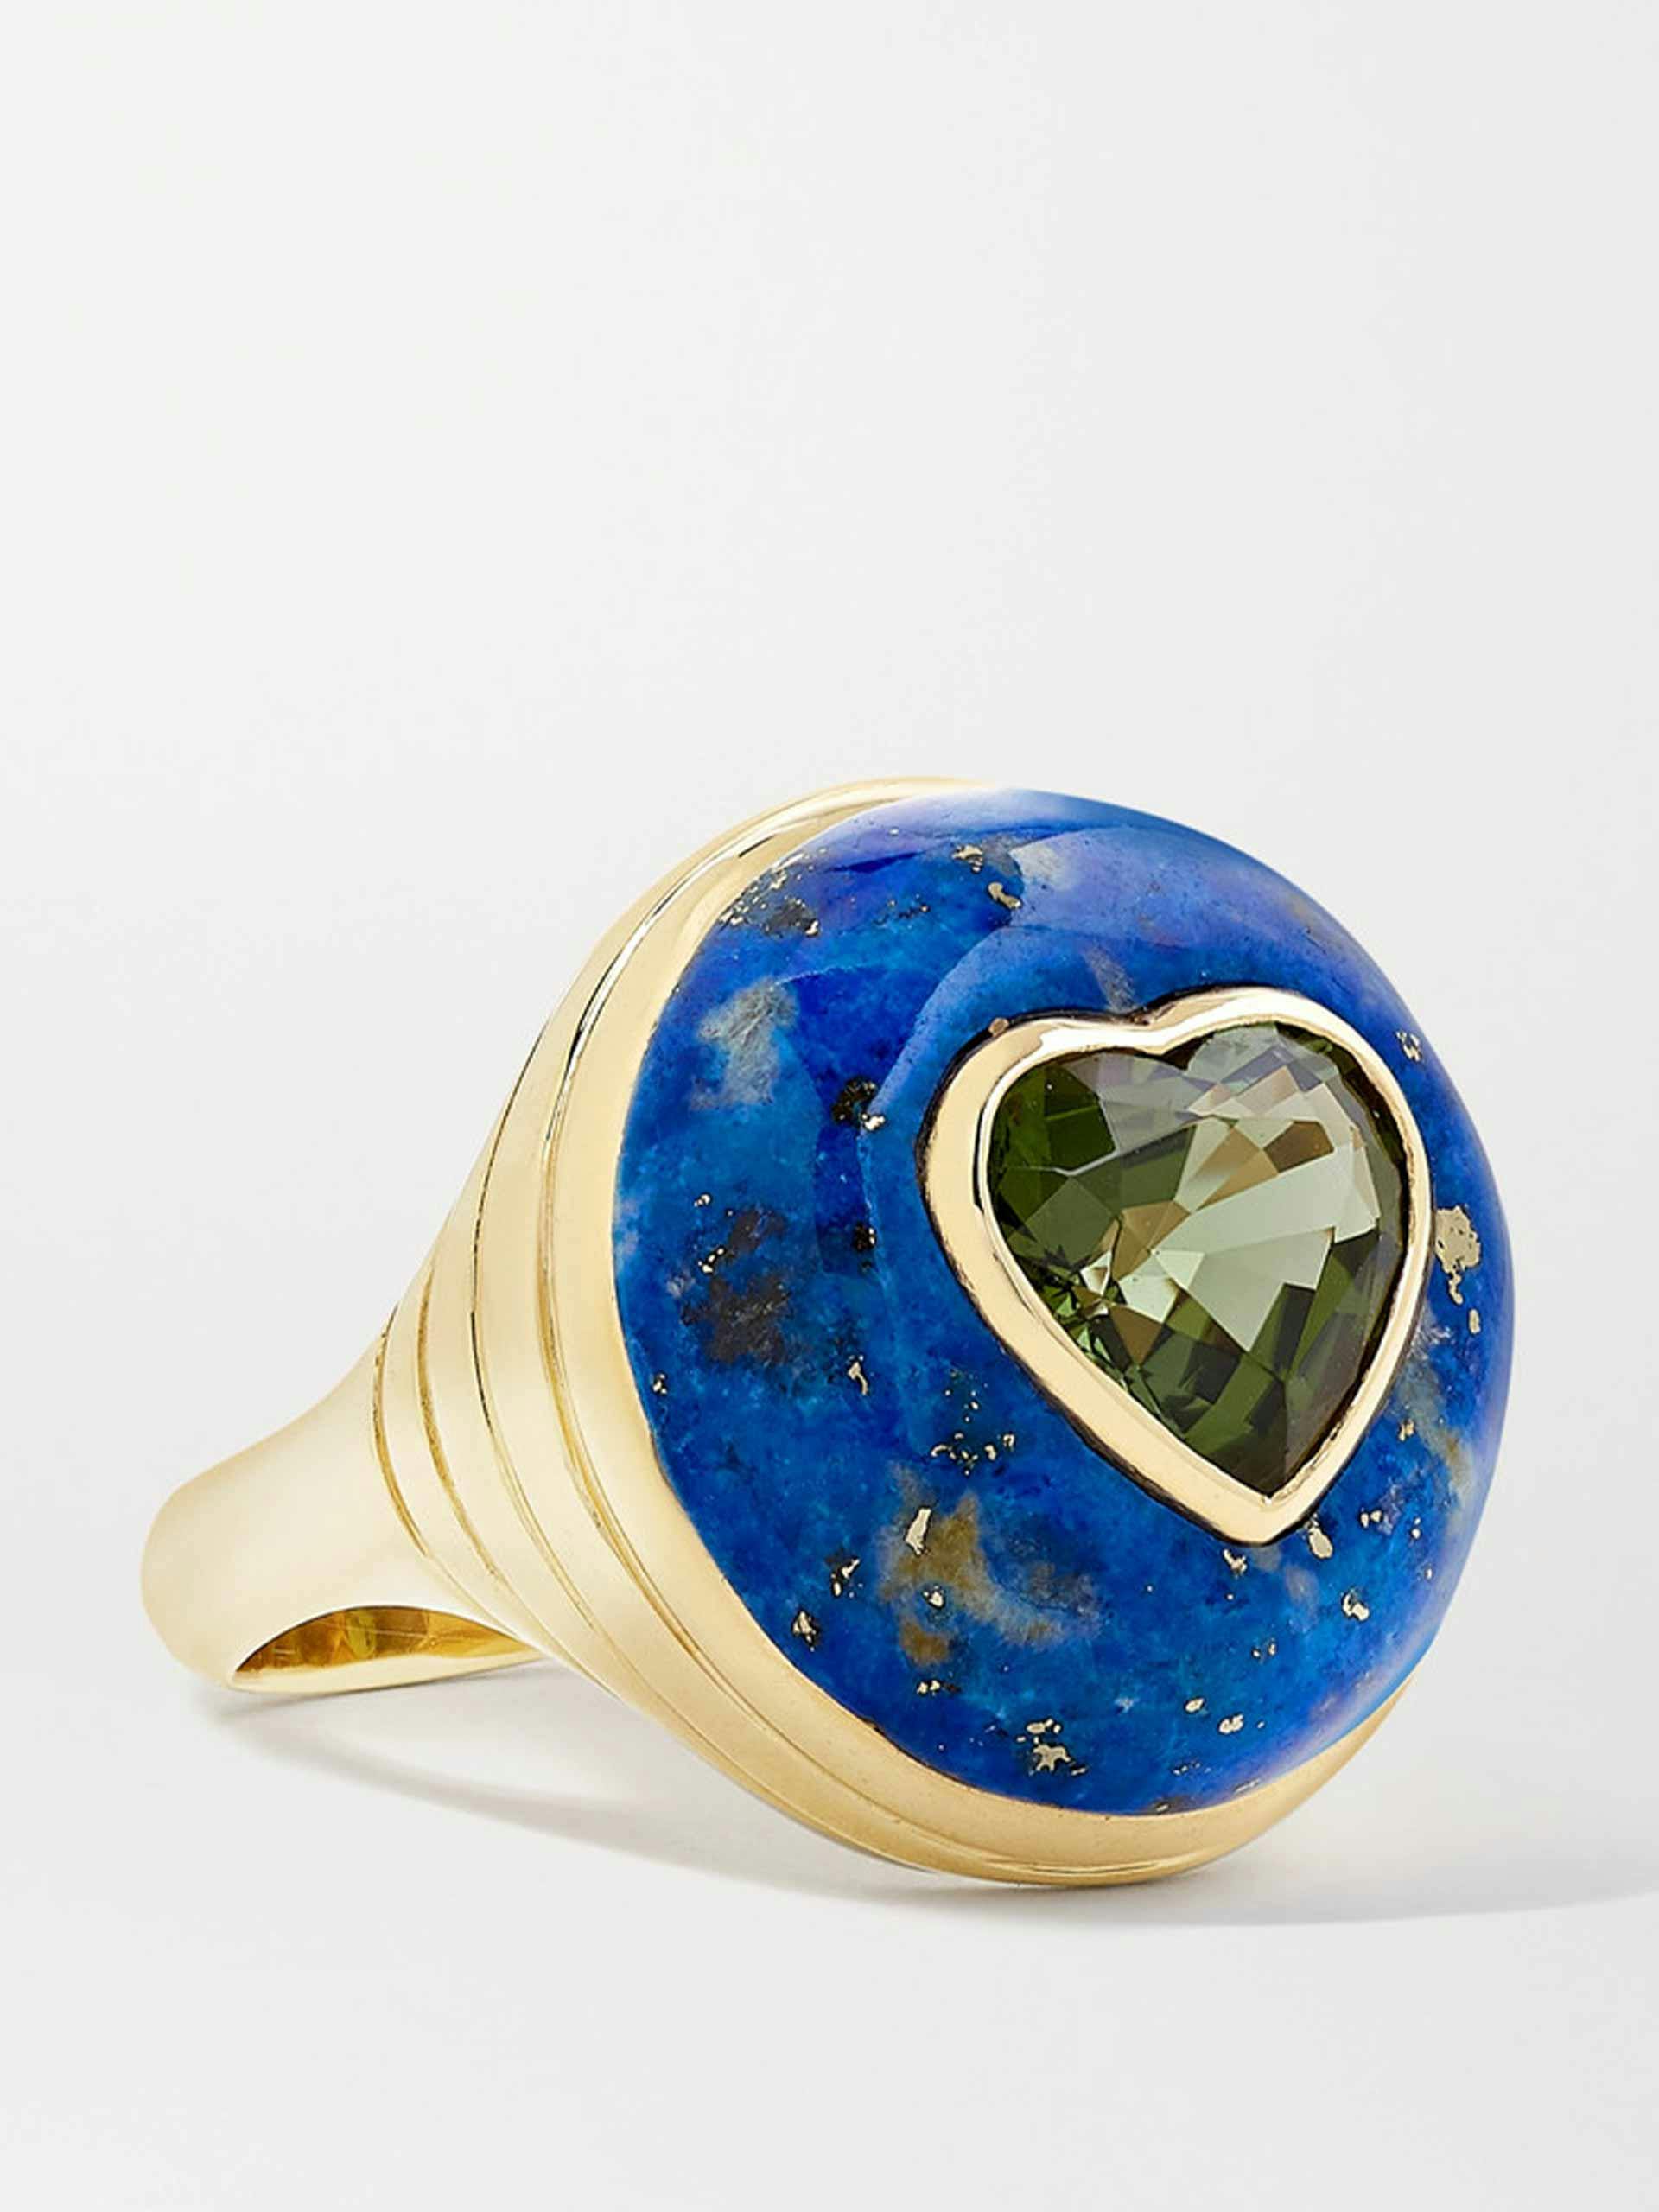 14-karat gold, lapis lazuli and tourmaline ring